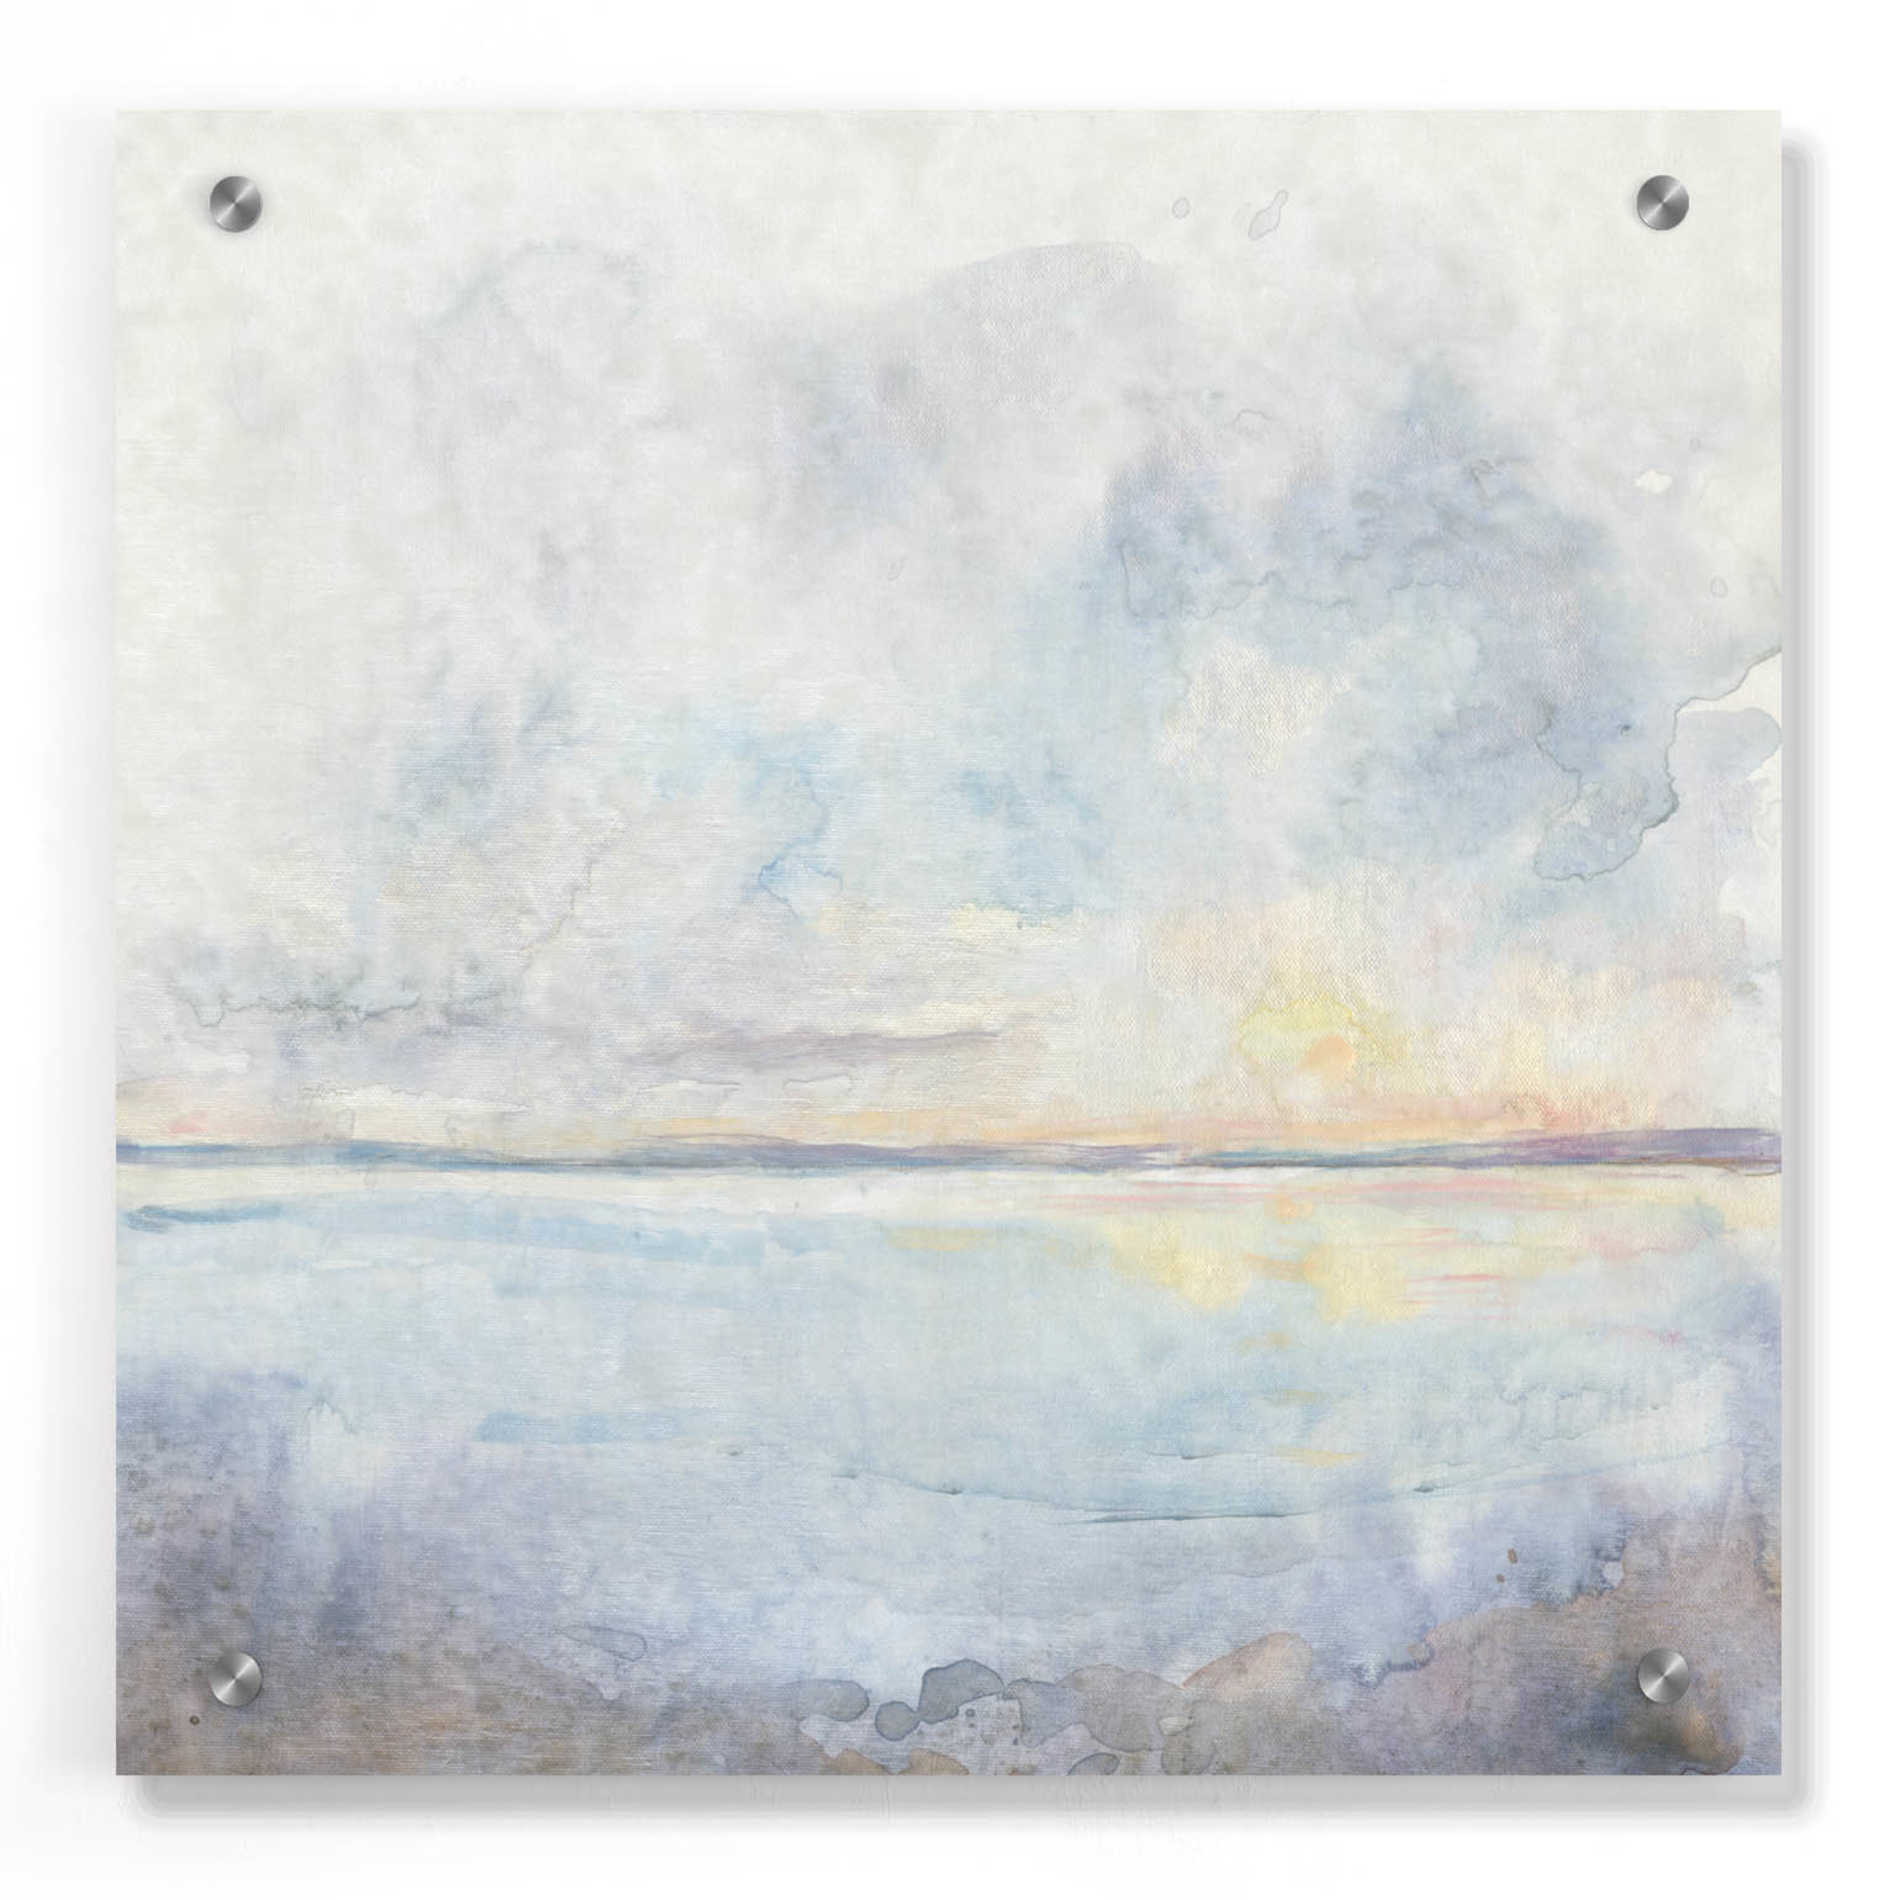 Epic Art 'Sea Mist I' by Tim O'Toole, Acrylic Glass Wall Art,36x36